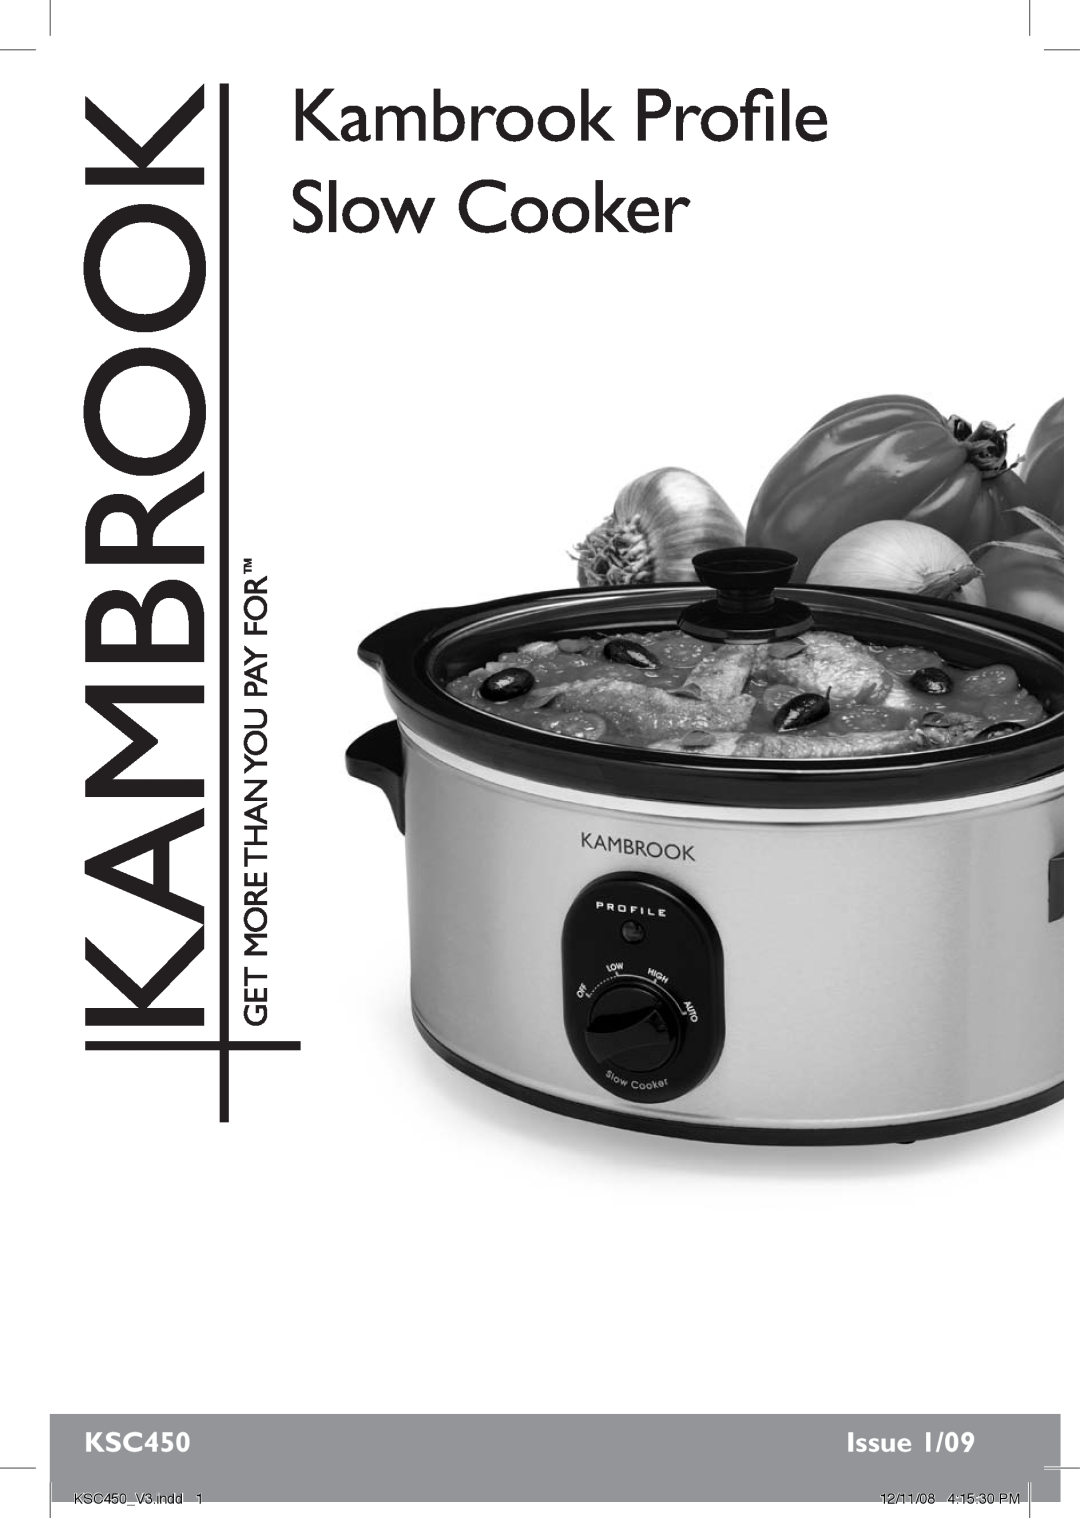 Kambrook manual Issue 1/09, Kambrook Profile Slow Cooker, KSC450 V3.indd, 12/11/08 4 15 30 PM 